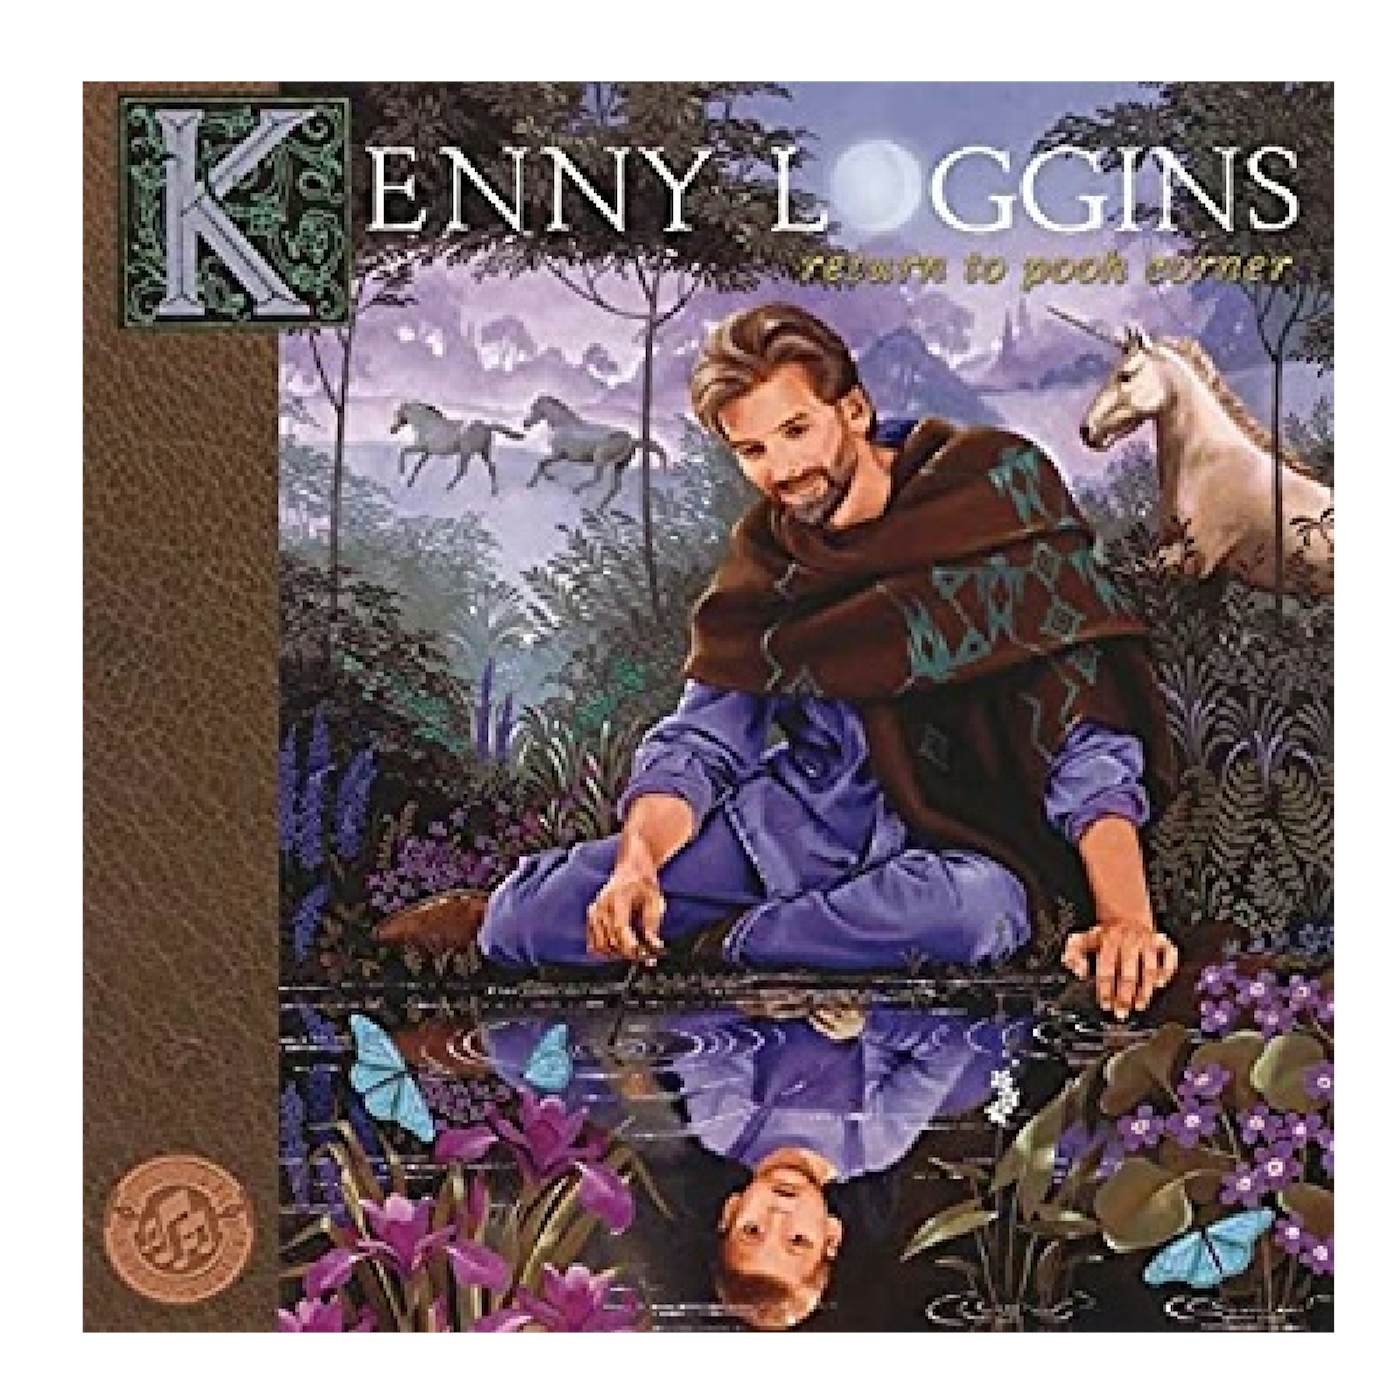 Kenny Loggins CD- Return To Pooh Corner